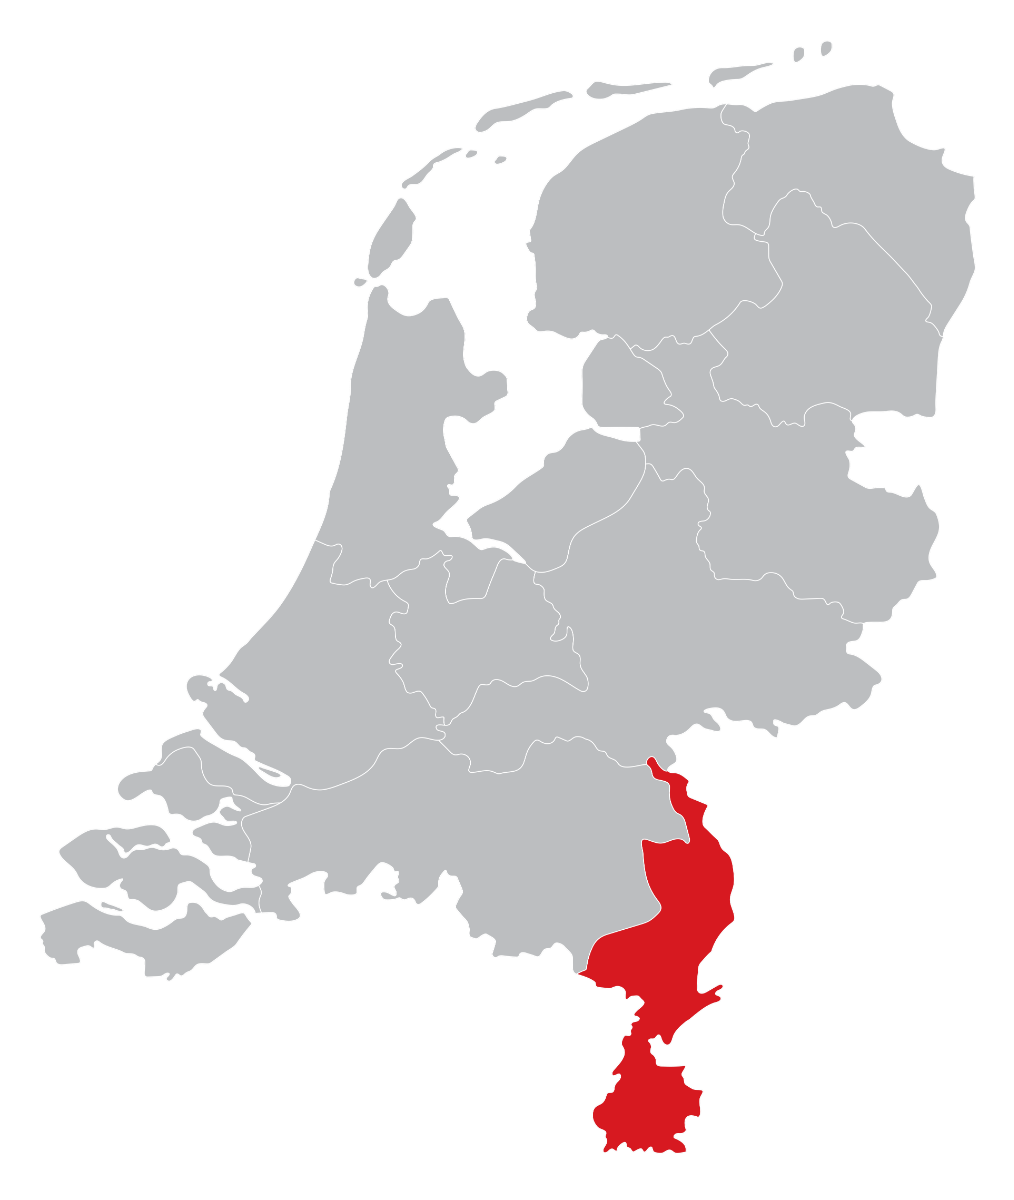 Dealers kaart in de provincie Limburg, Venlo, Maastricht, Heerlen, Roermond, Kerkrade of Weert